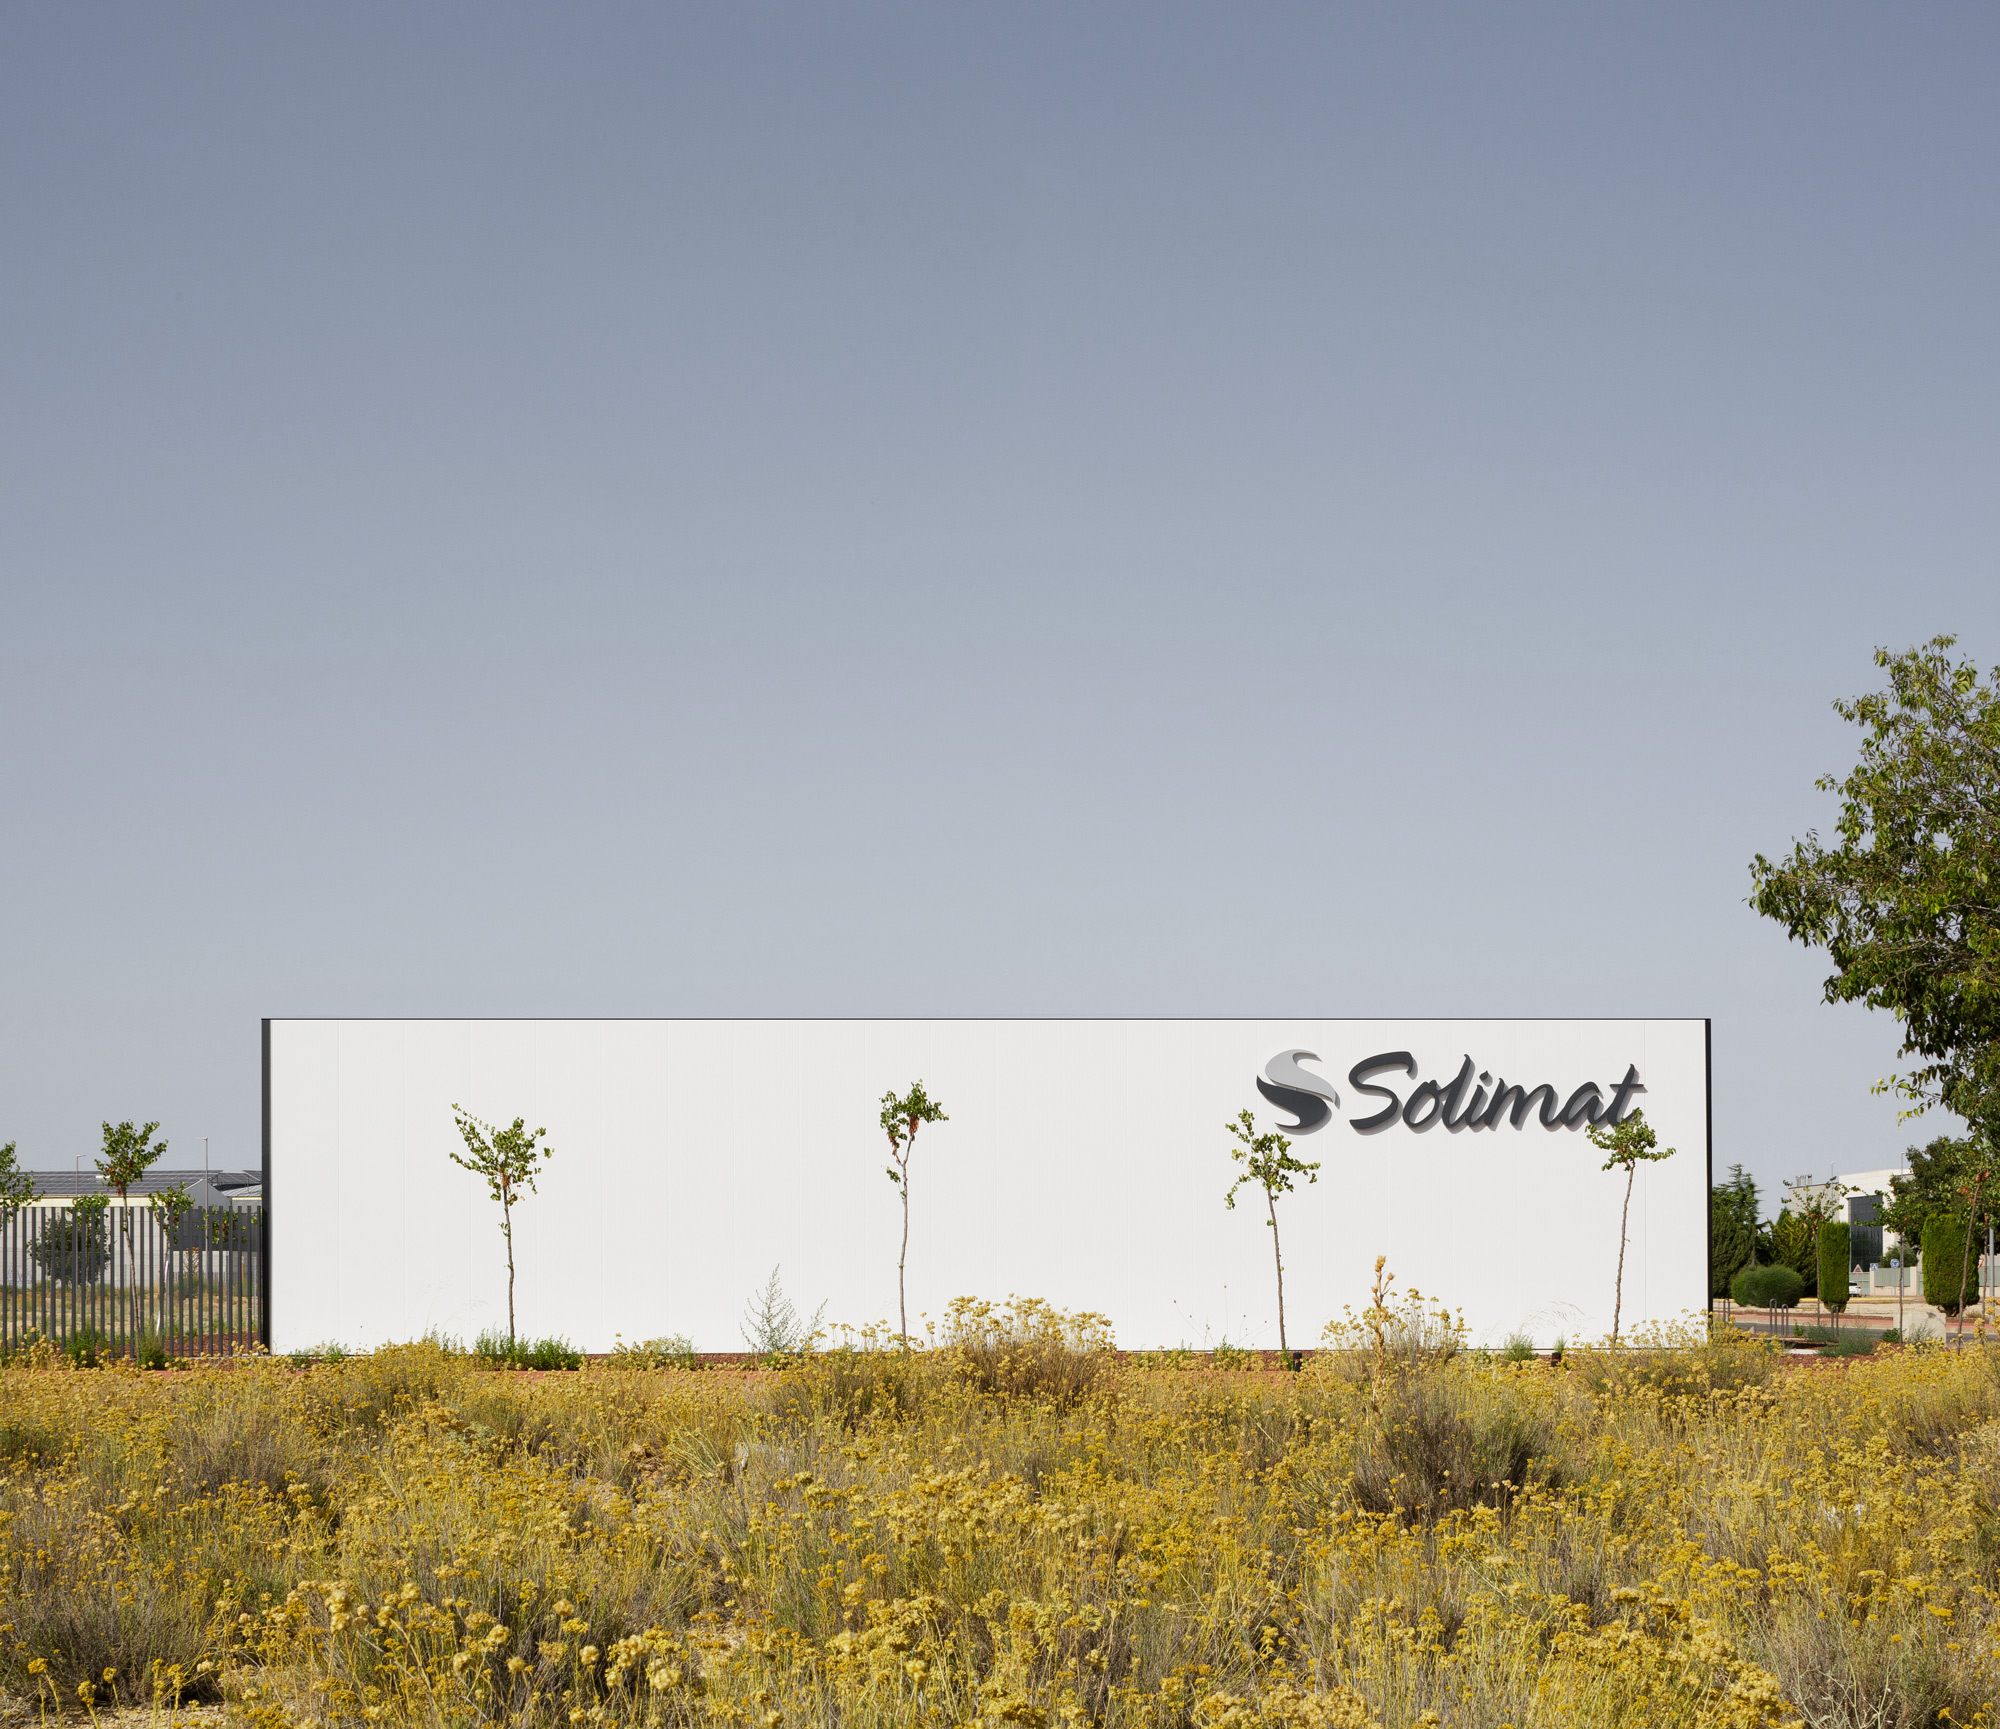 Centro de Salud Solimat en Albacete  Solimat Clinic in Albacete